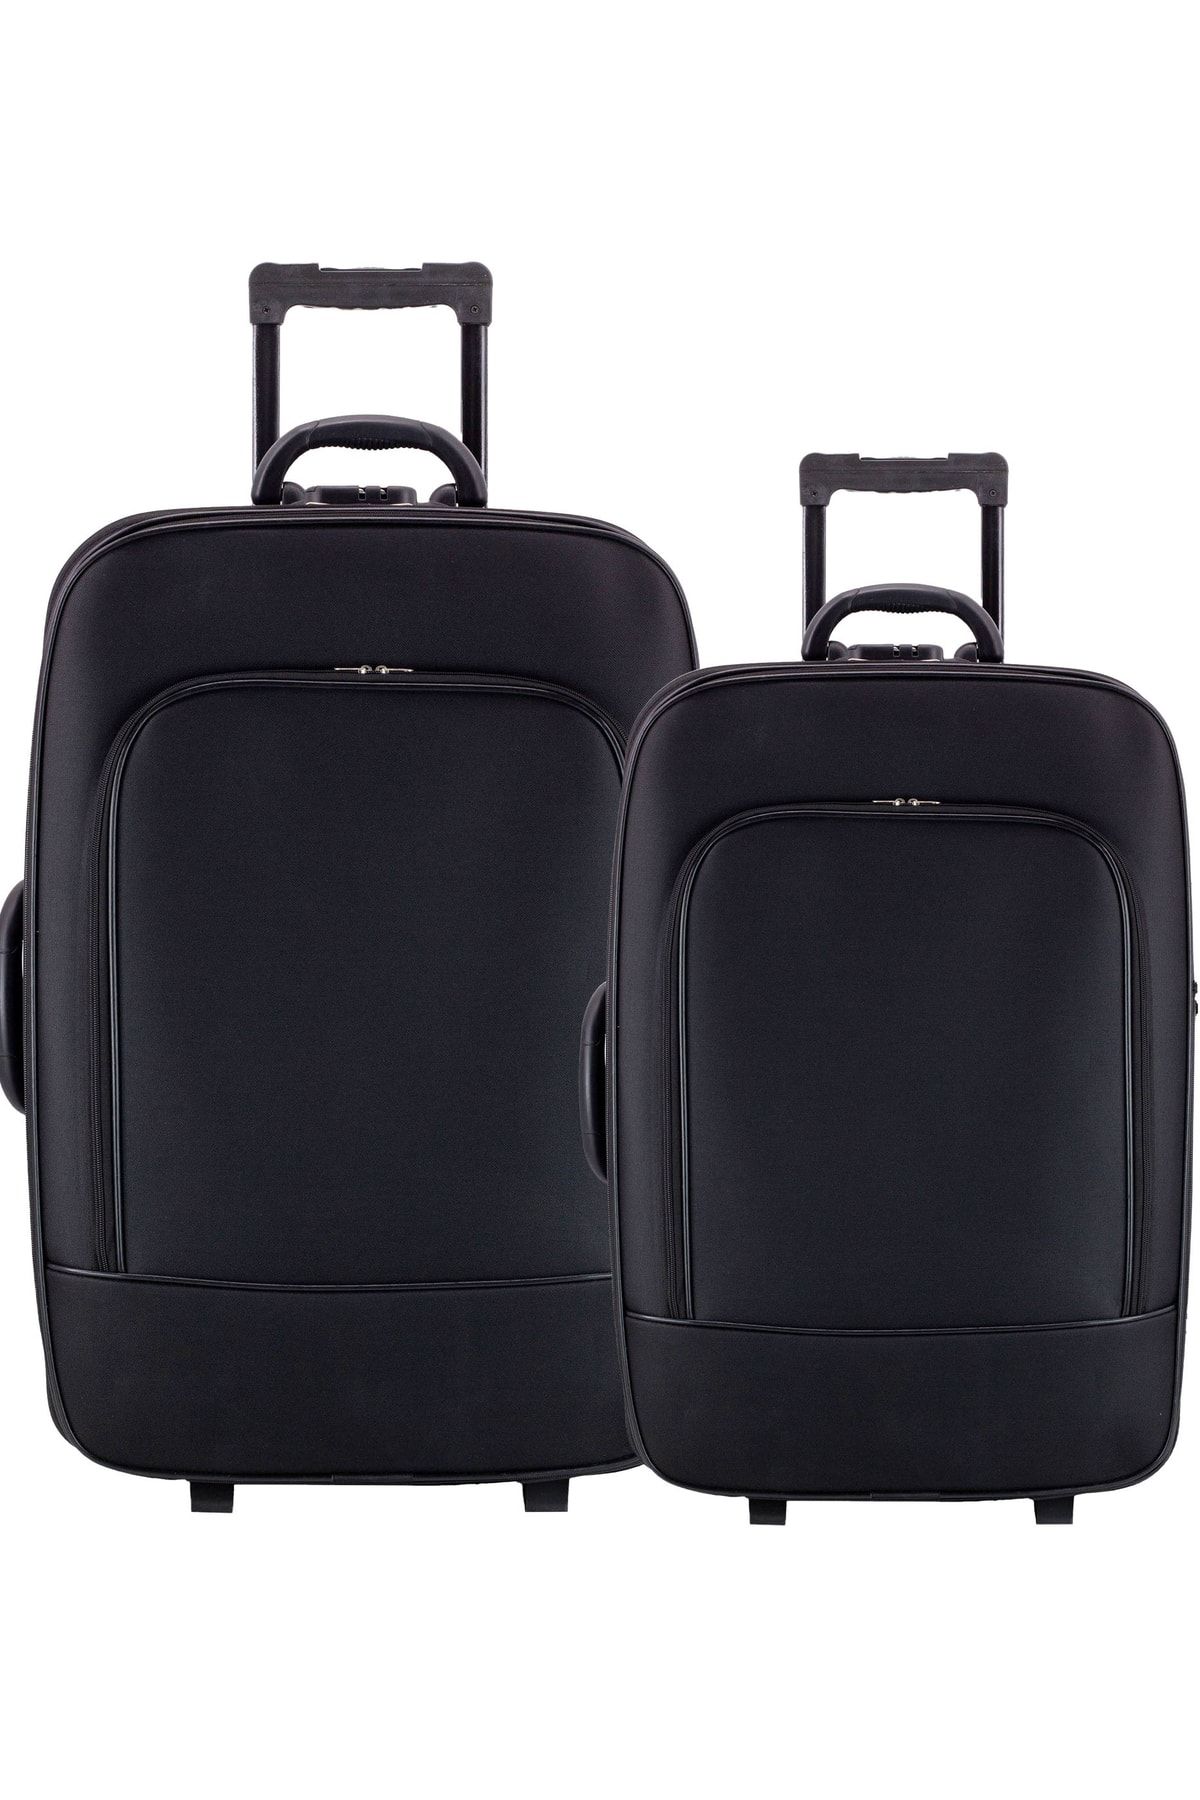 KAFF Ekonomik Unisex Kumaş Siyah Kırılmaz 2 Tekerlekli Önü Cepli 2'lü Valiz&bavul Seti